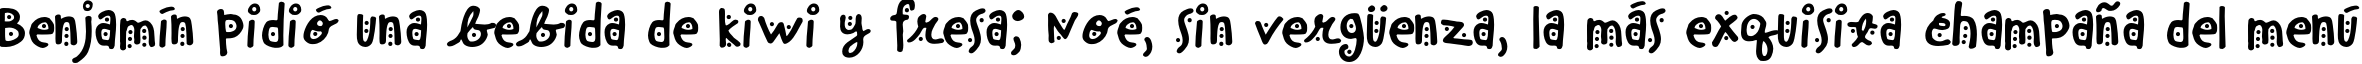 Пример написания шрифтом ChinchillaDots текста на испанском